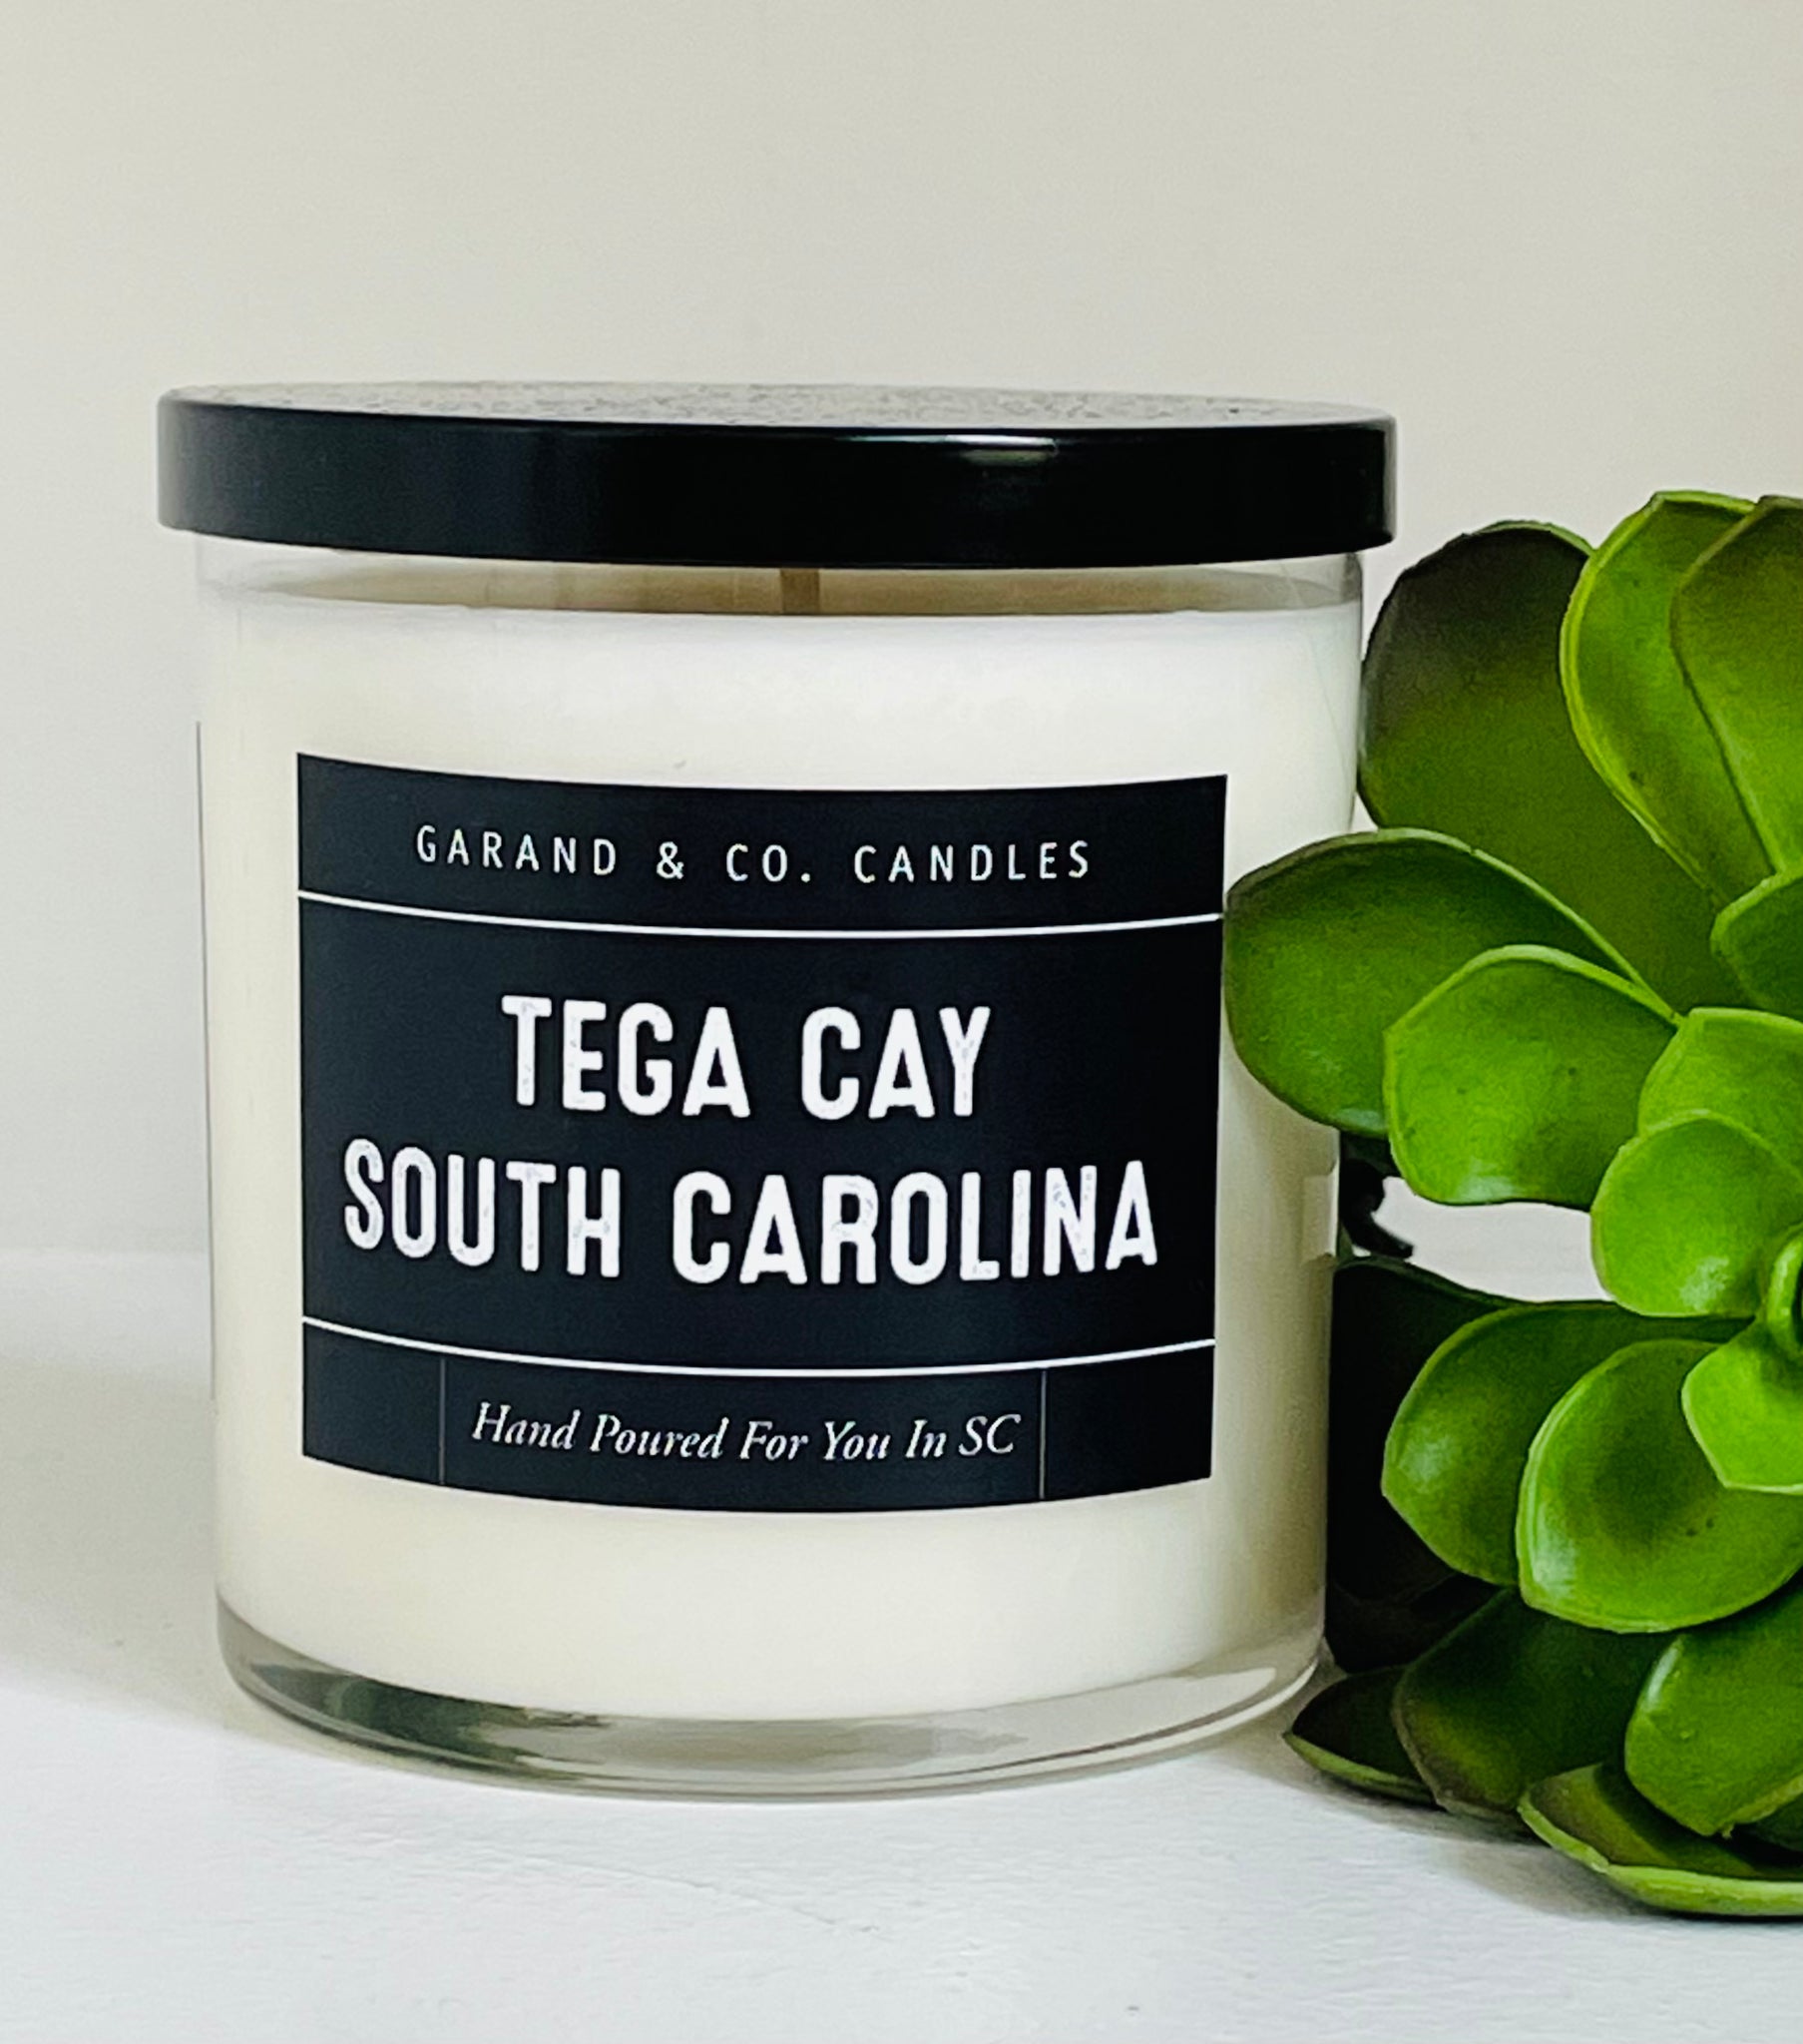 12 oz Clear Glass Jar Candle - Tega Cay, South Carolina